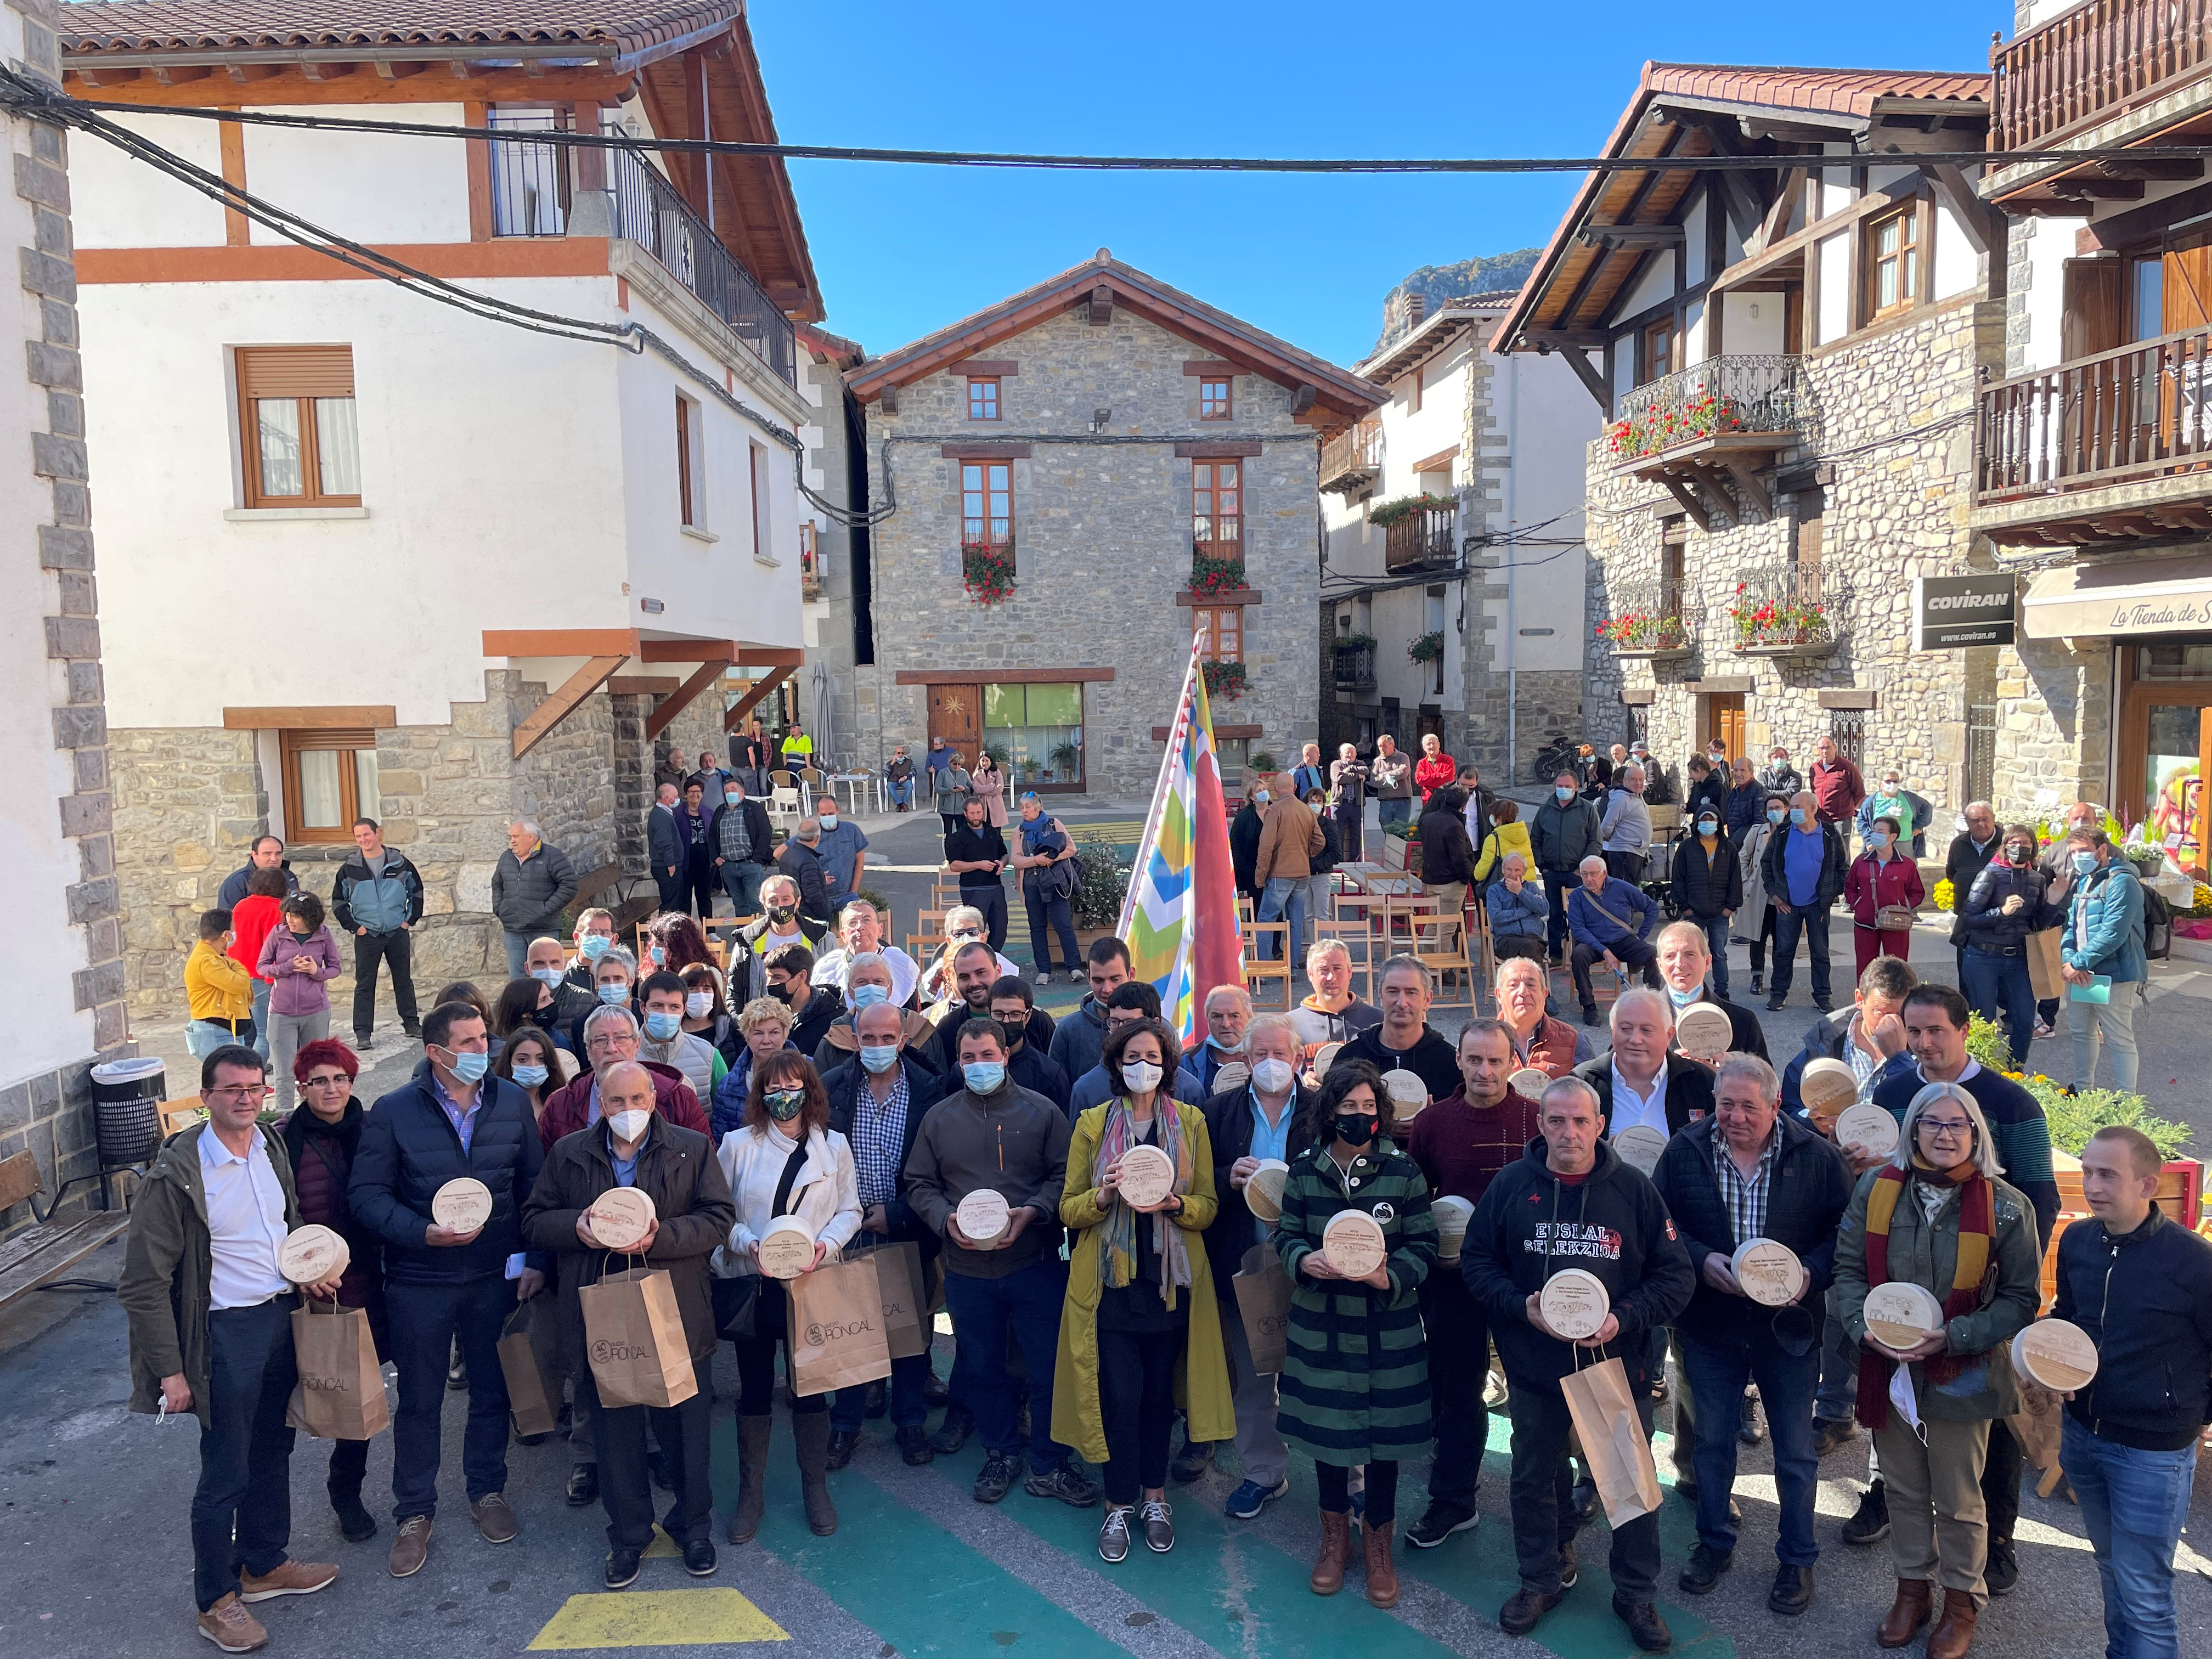 Fotografía exterior donde varias personas están de pie en una plaza con un queso del Roncal en sus manos.